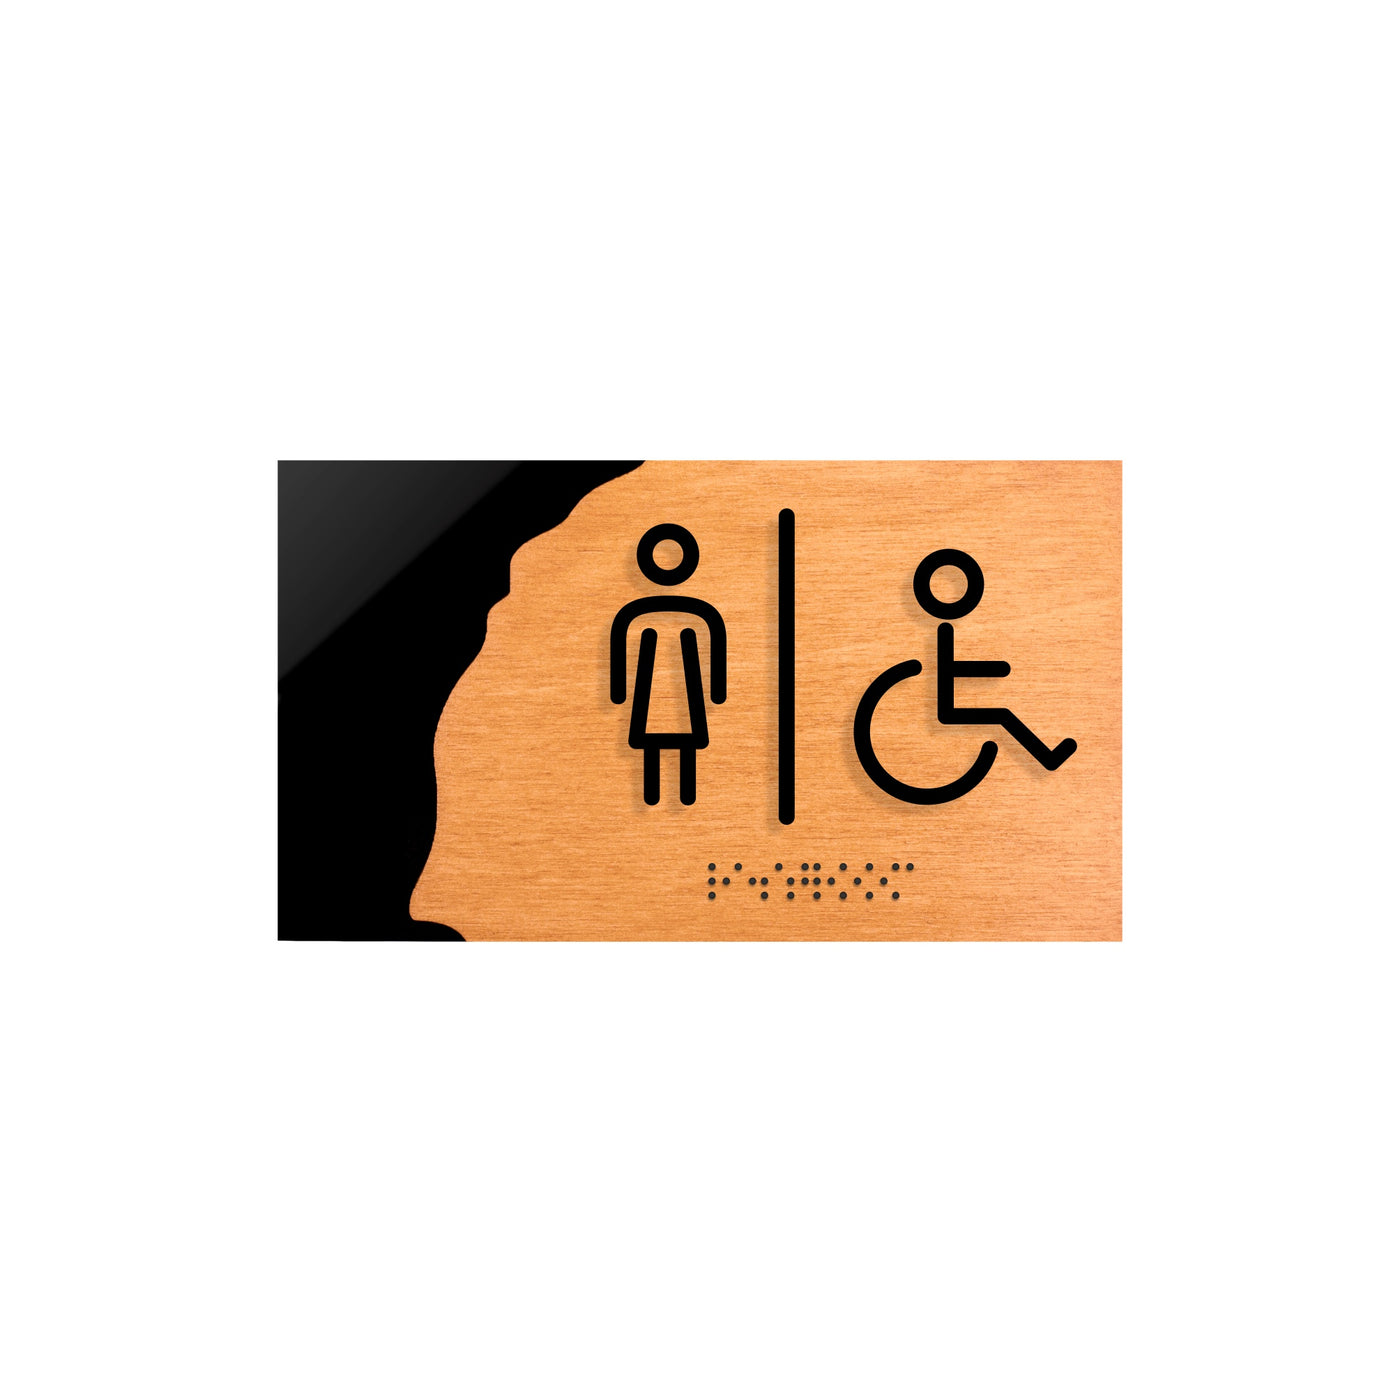 Women & Disabled Person Restroom Sign "Sherwood" Design